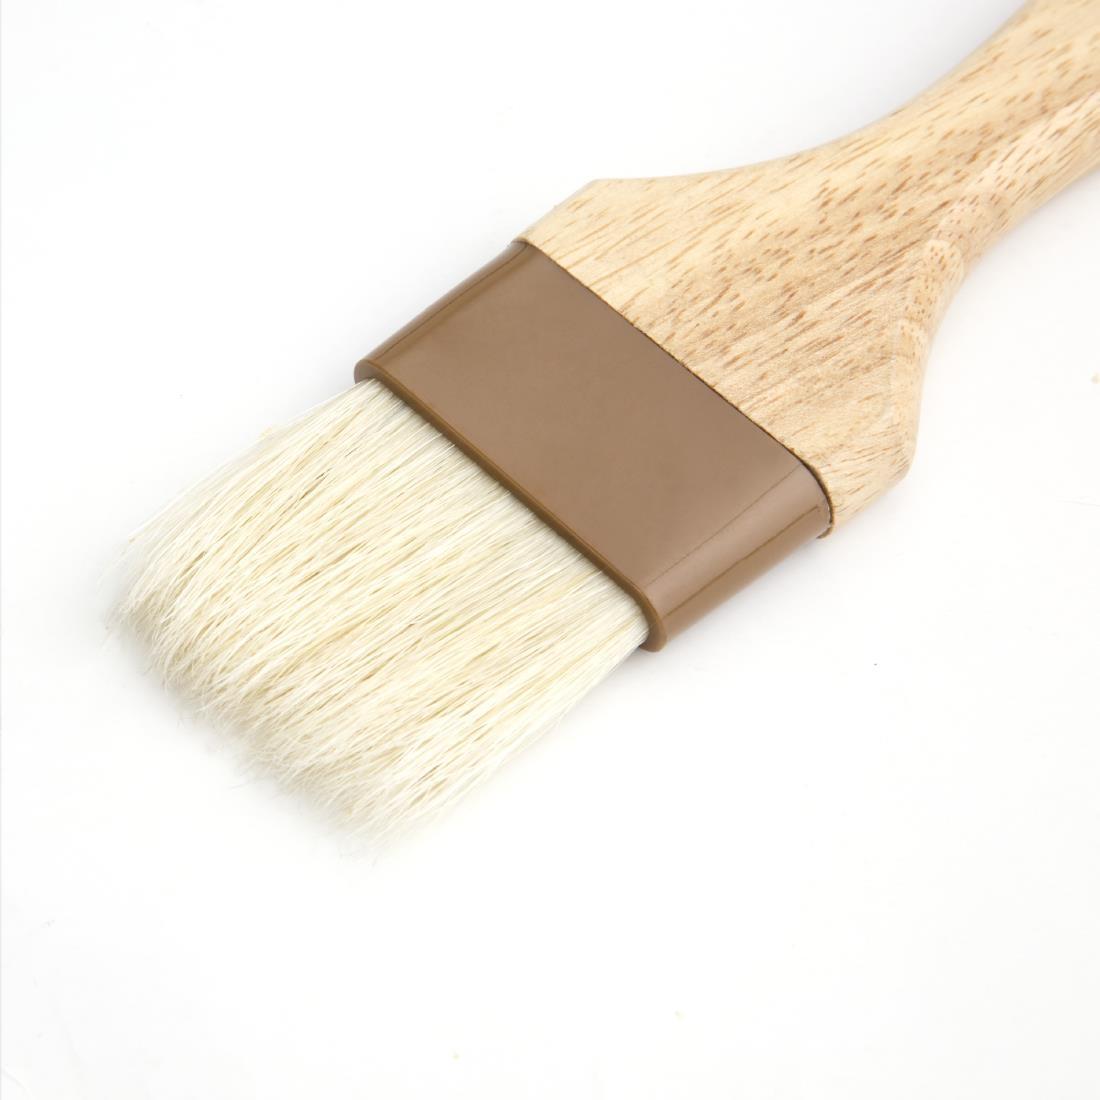 45 mm Bristles Vogue CF963 Vogue Round Pastry Brush Wooden Handle